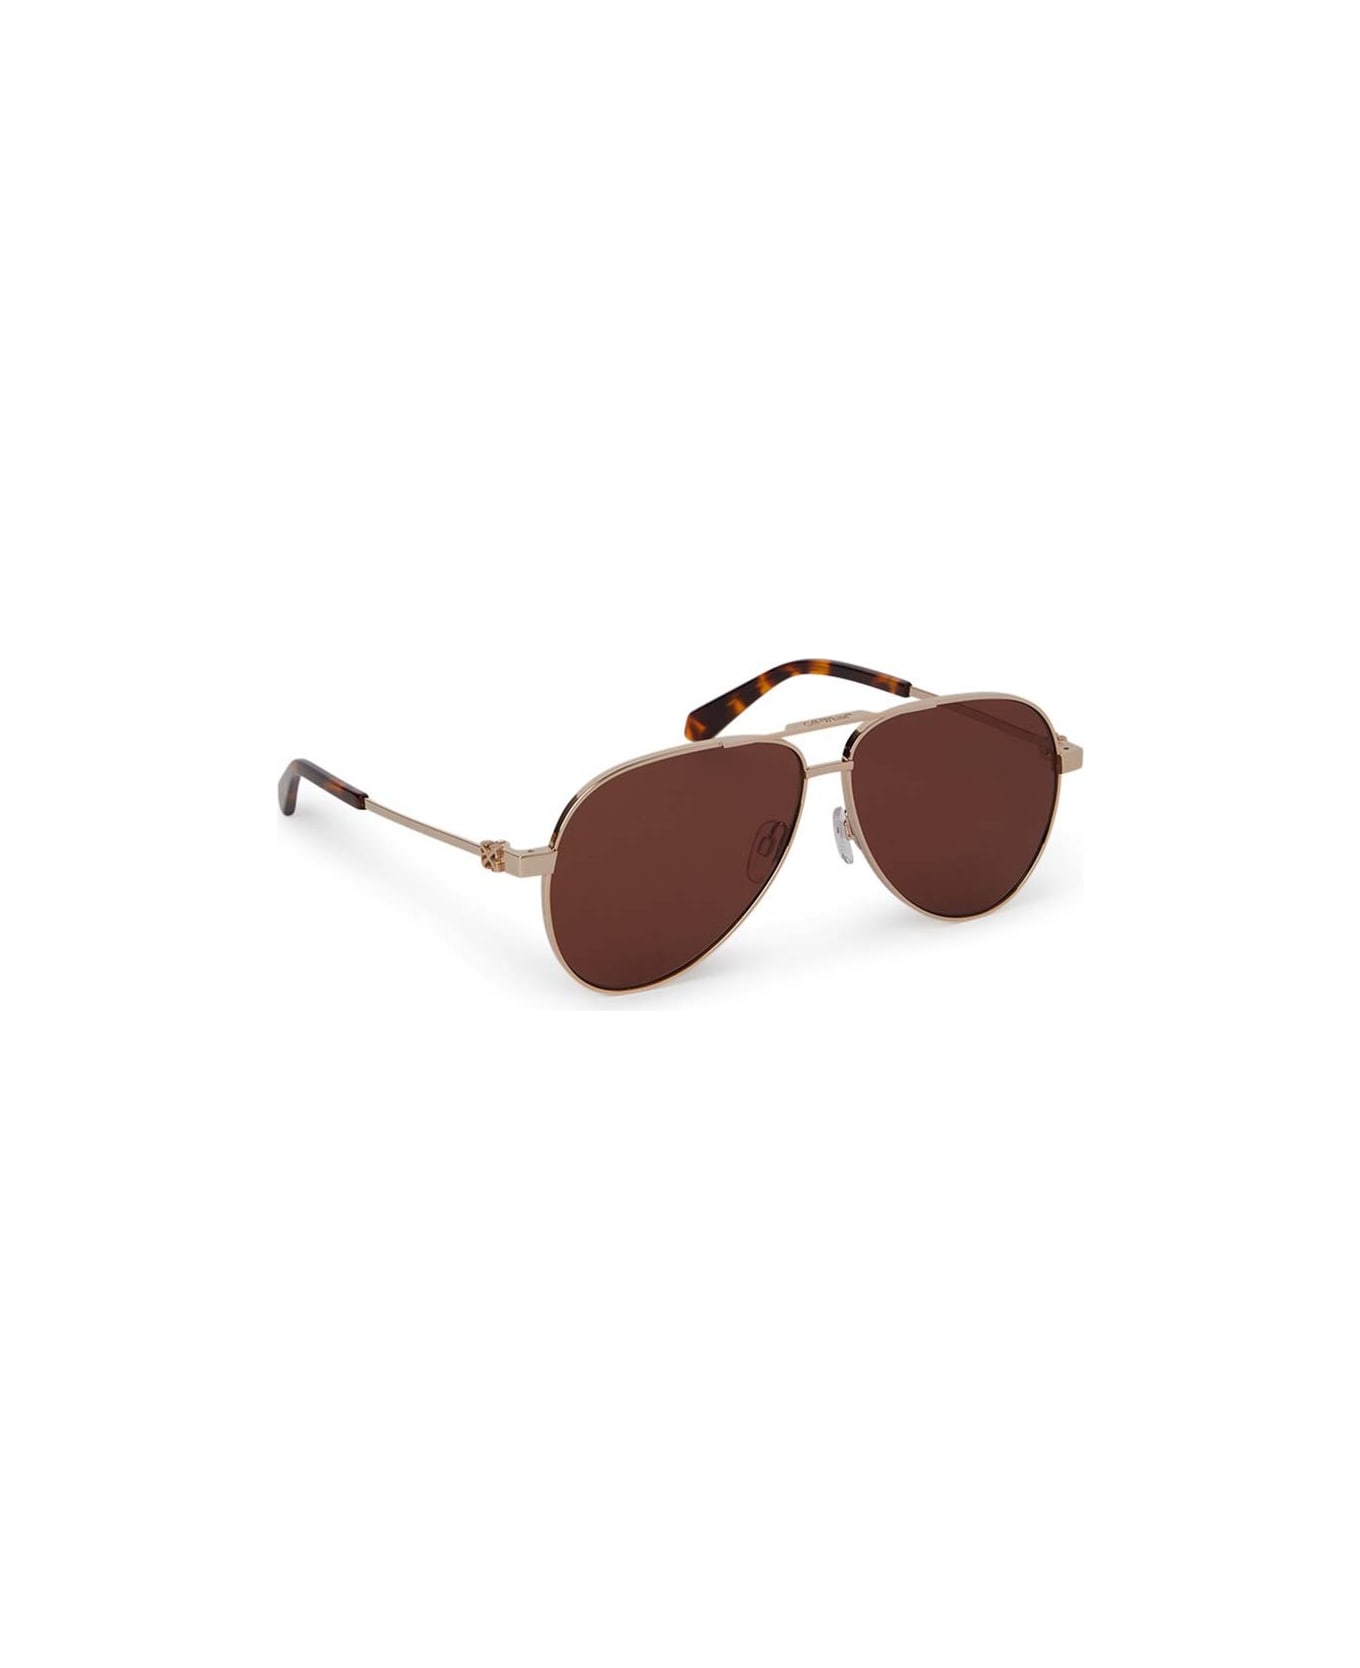 Off-White Sunglasses - Oro/Bronzo specchiato